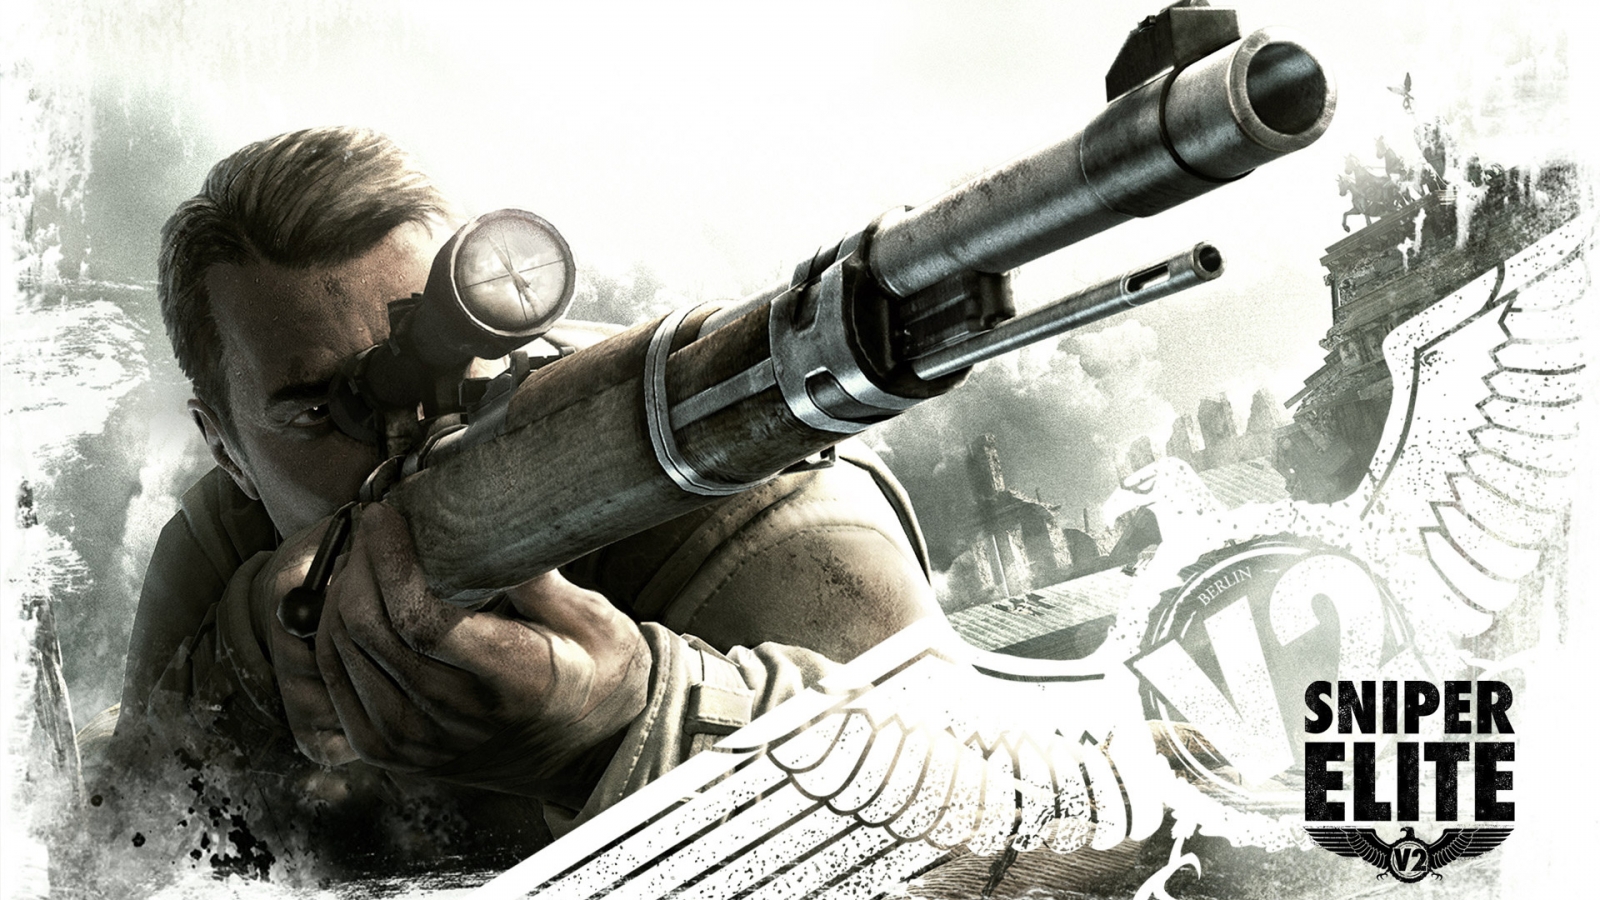 Sniper Elite 2 for 1600 x 900 HDTV resolution